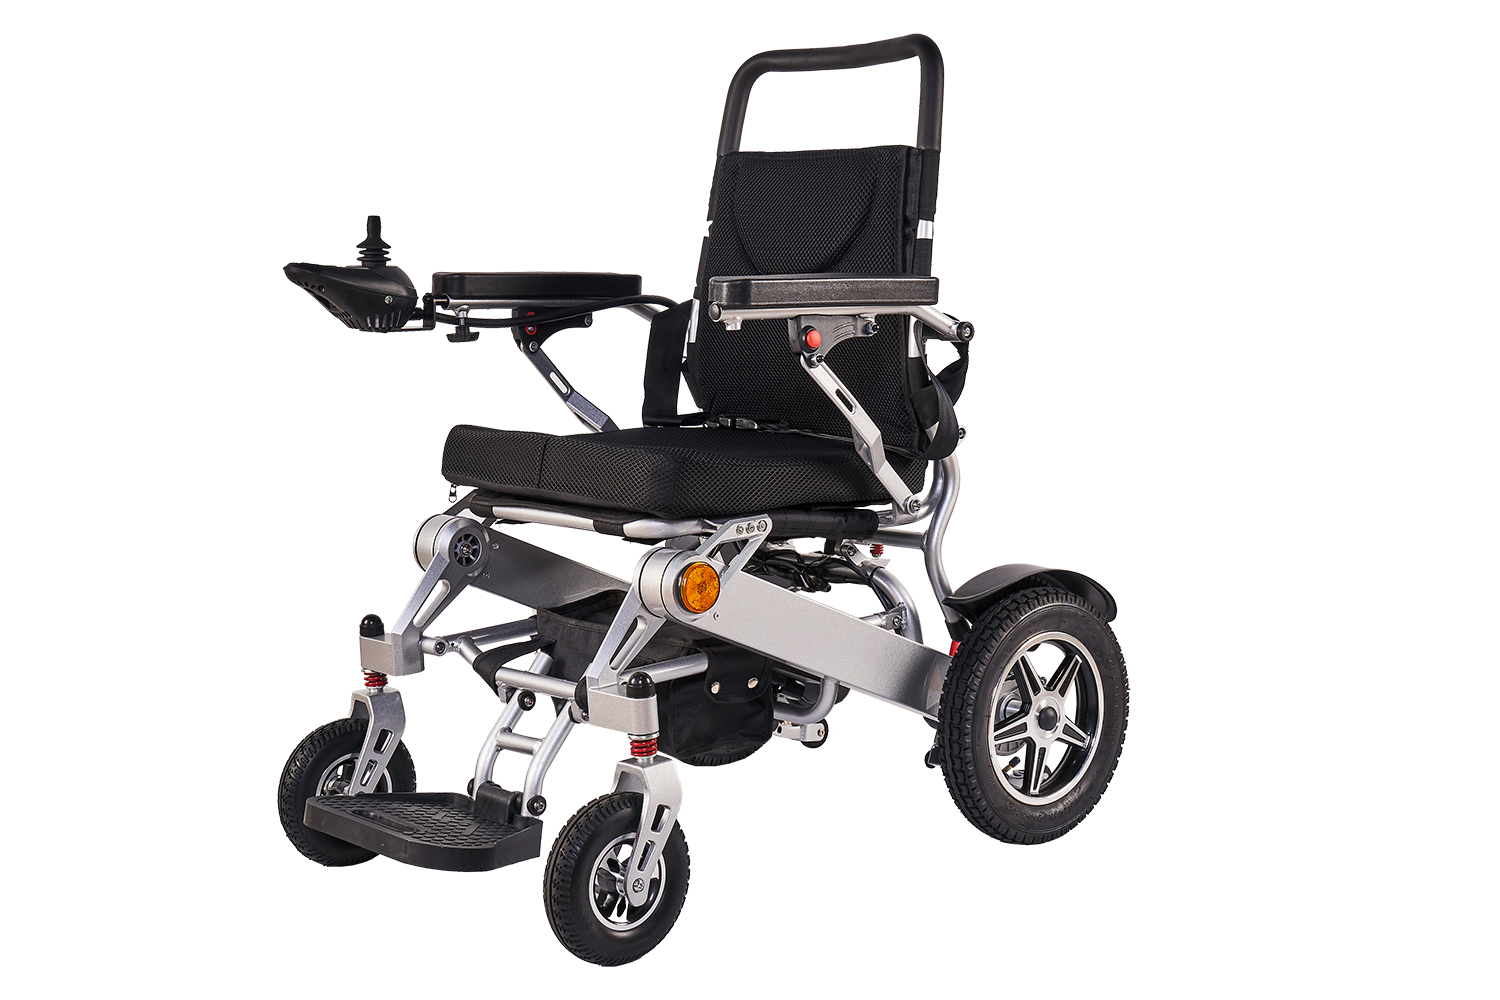 Bærbare motoriserede hjul: En fremtidig trend for forbrugere – Opdag den ultimative lette, bærbare elektriske kørestol